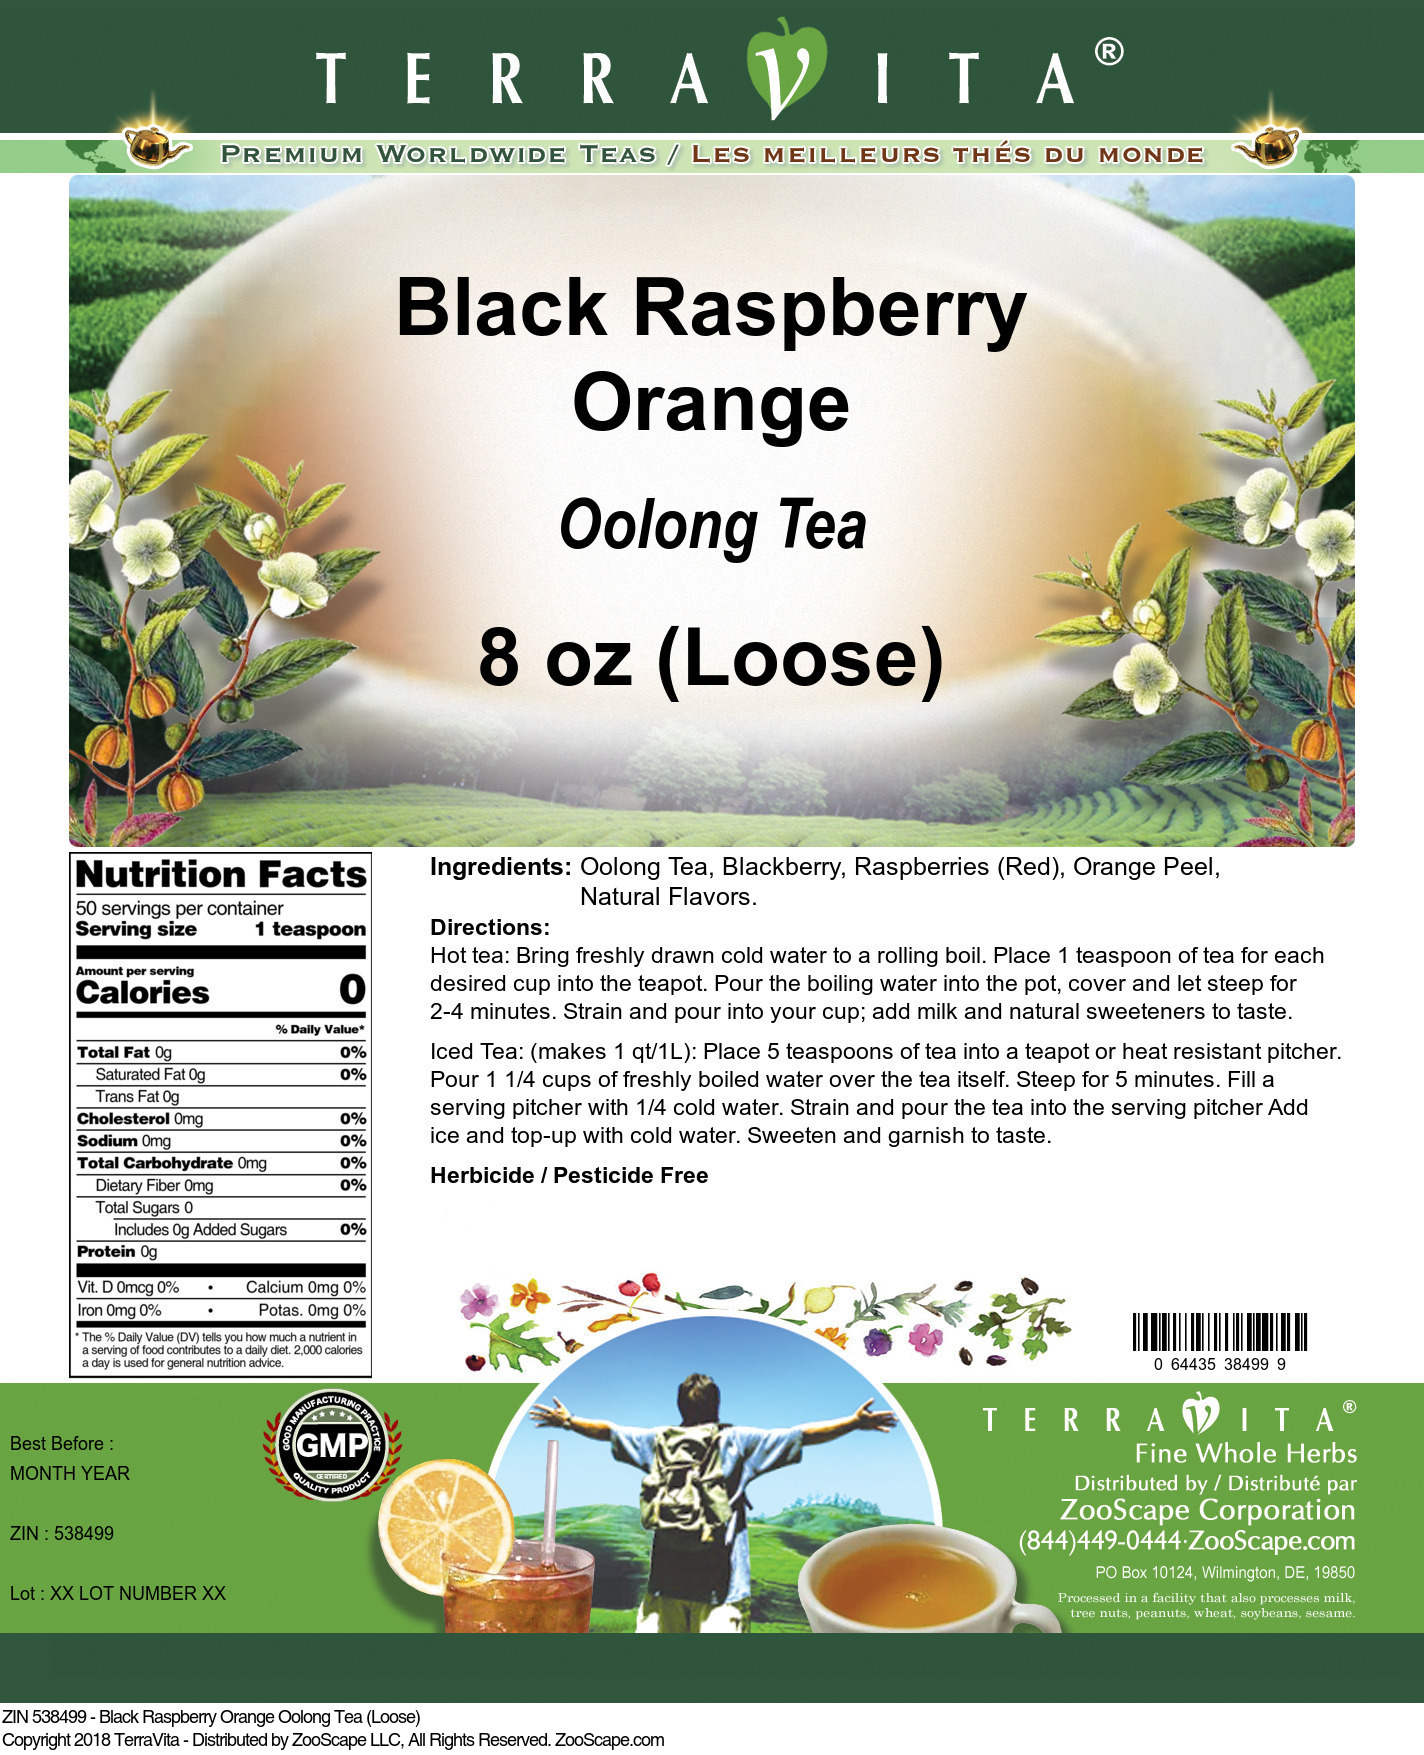 Black Raspberry Orange Oolong Tea (Loose) - Label